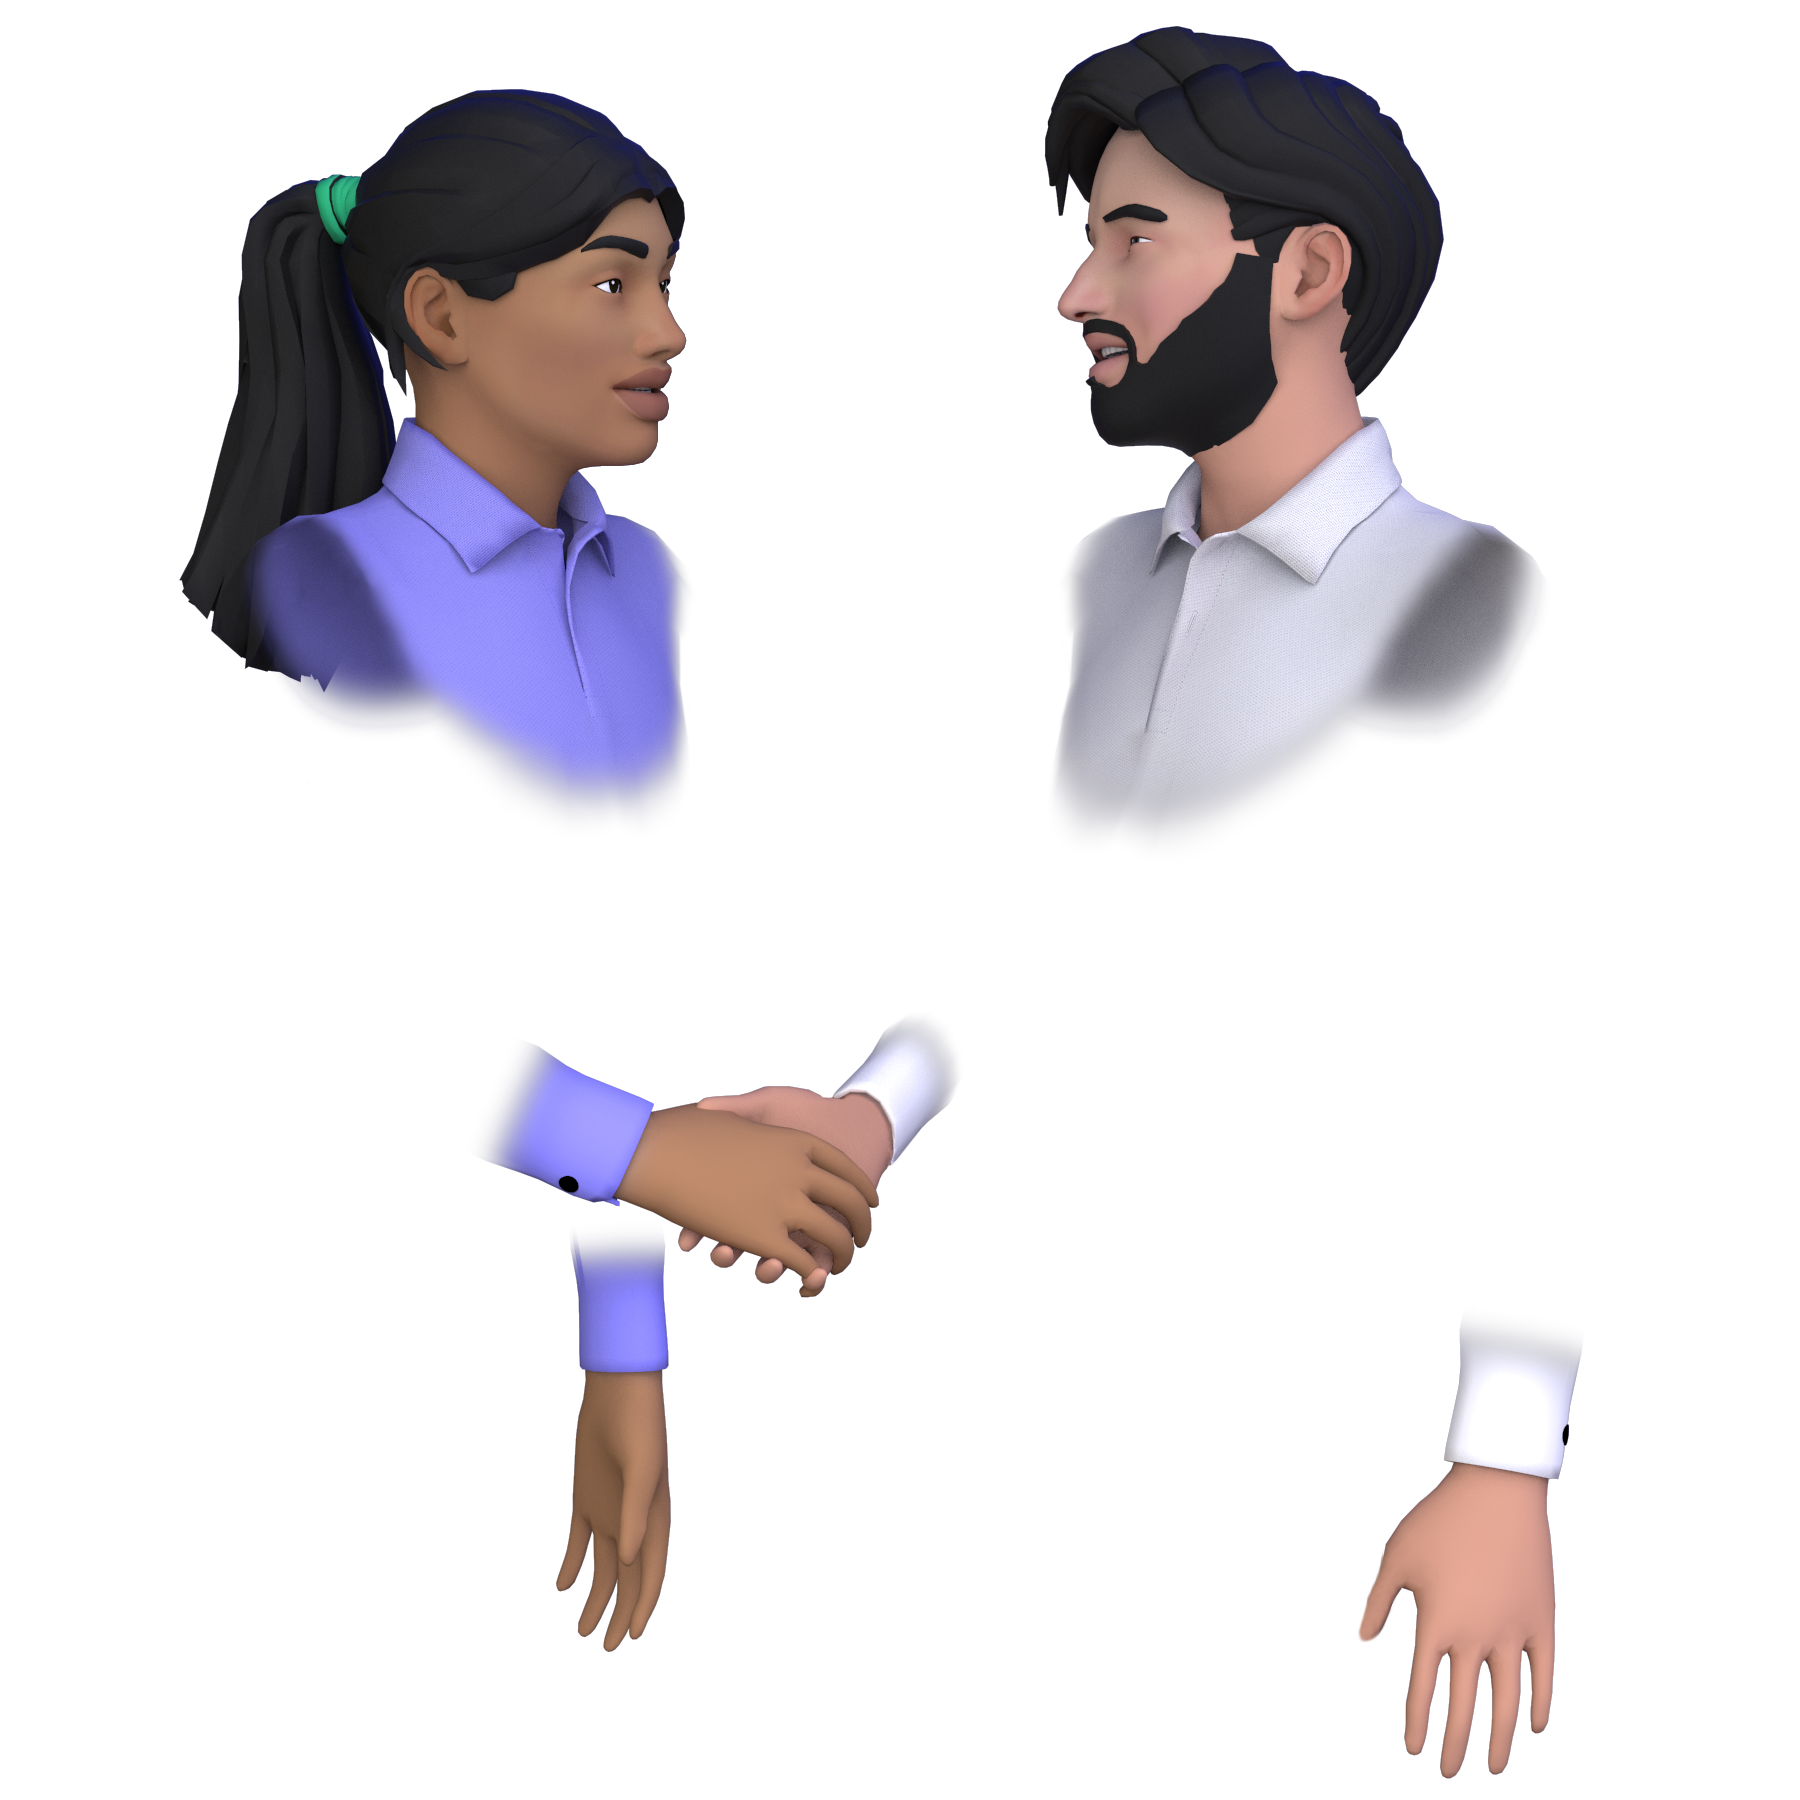 meetinVR Handshake between avatars